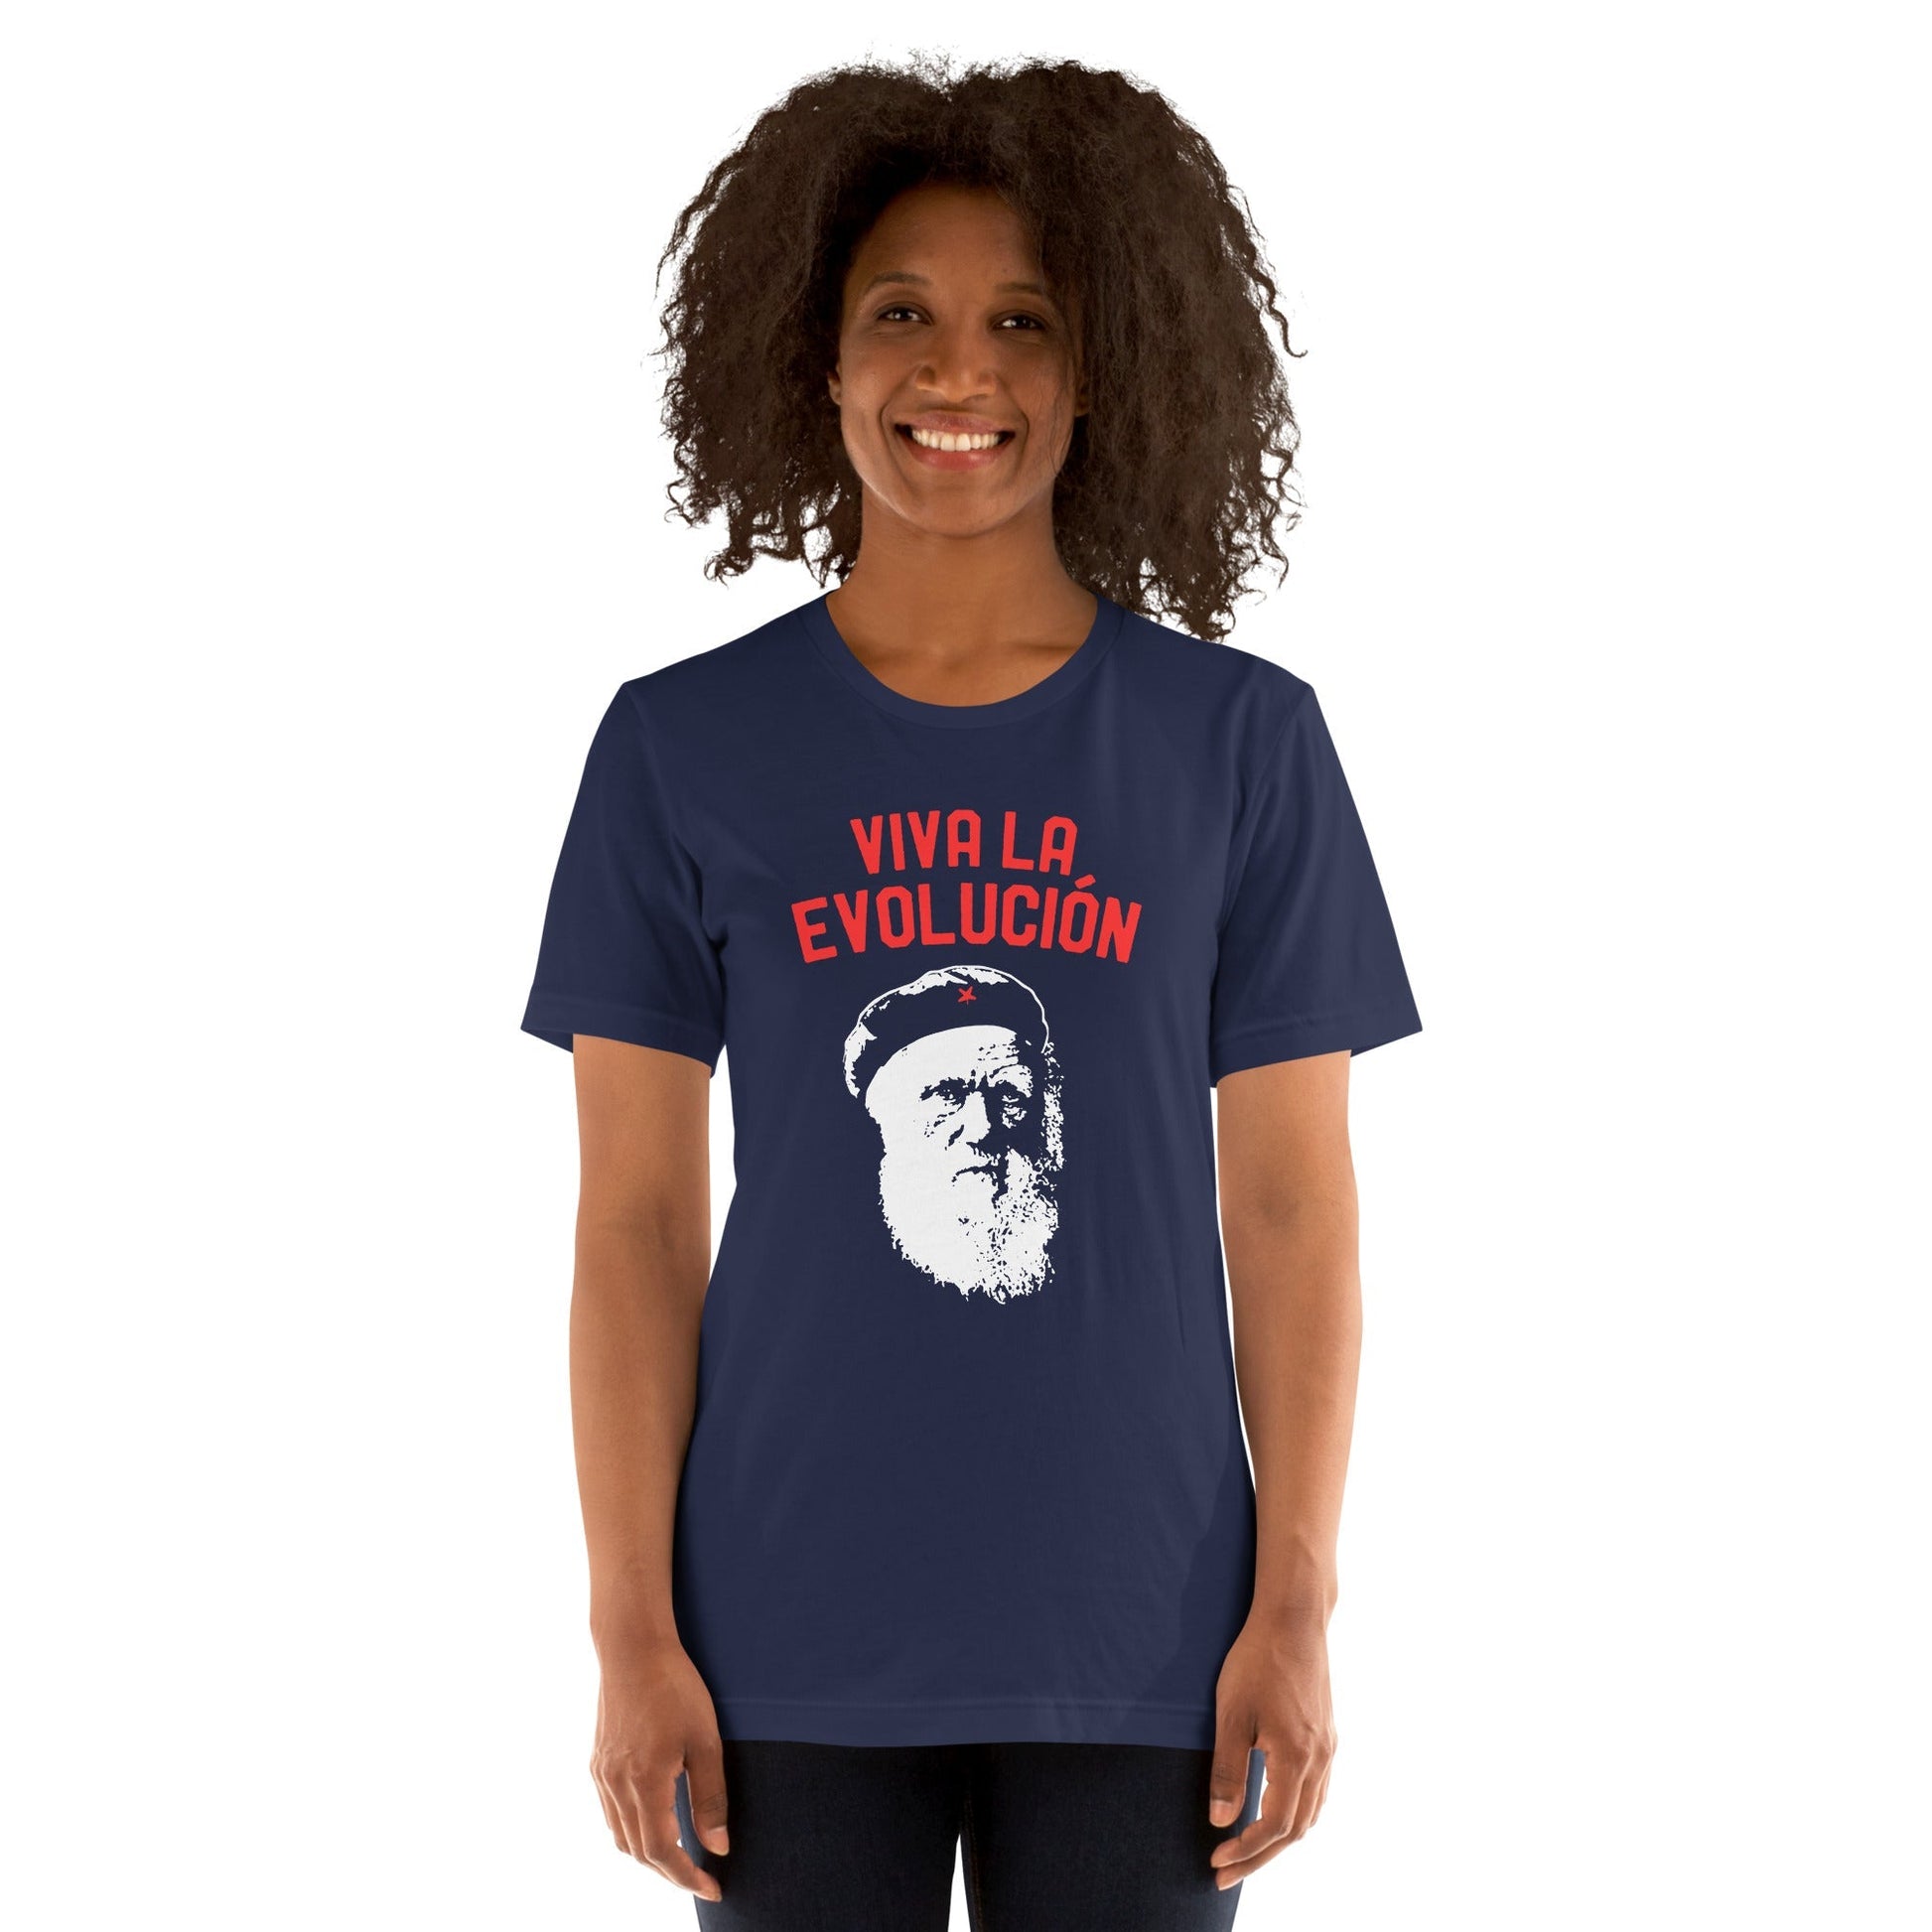 Darwin - Viva la Evolucion - Basic T-Shirt